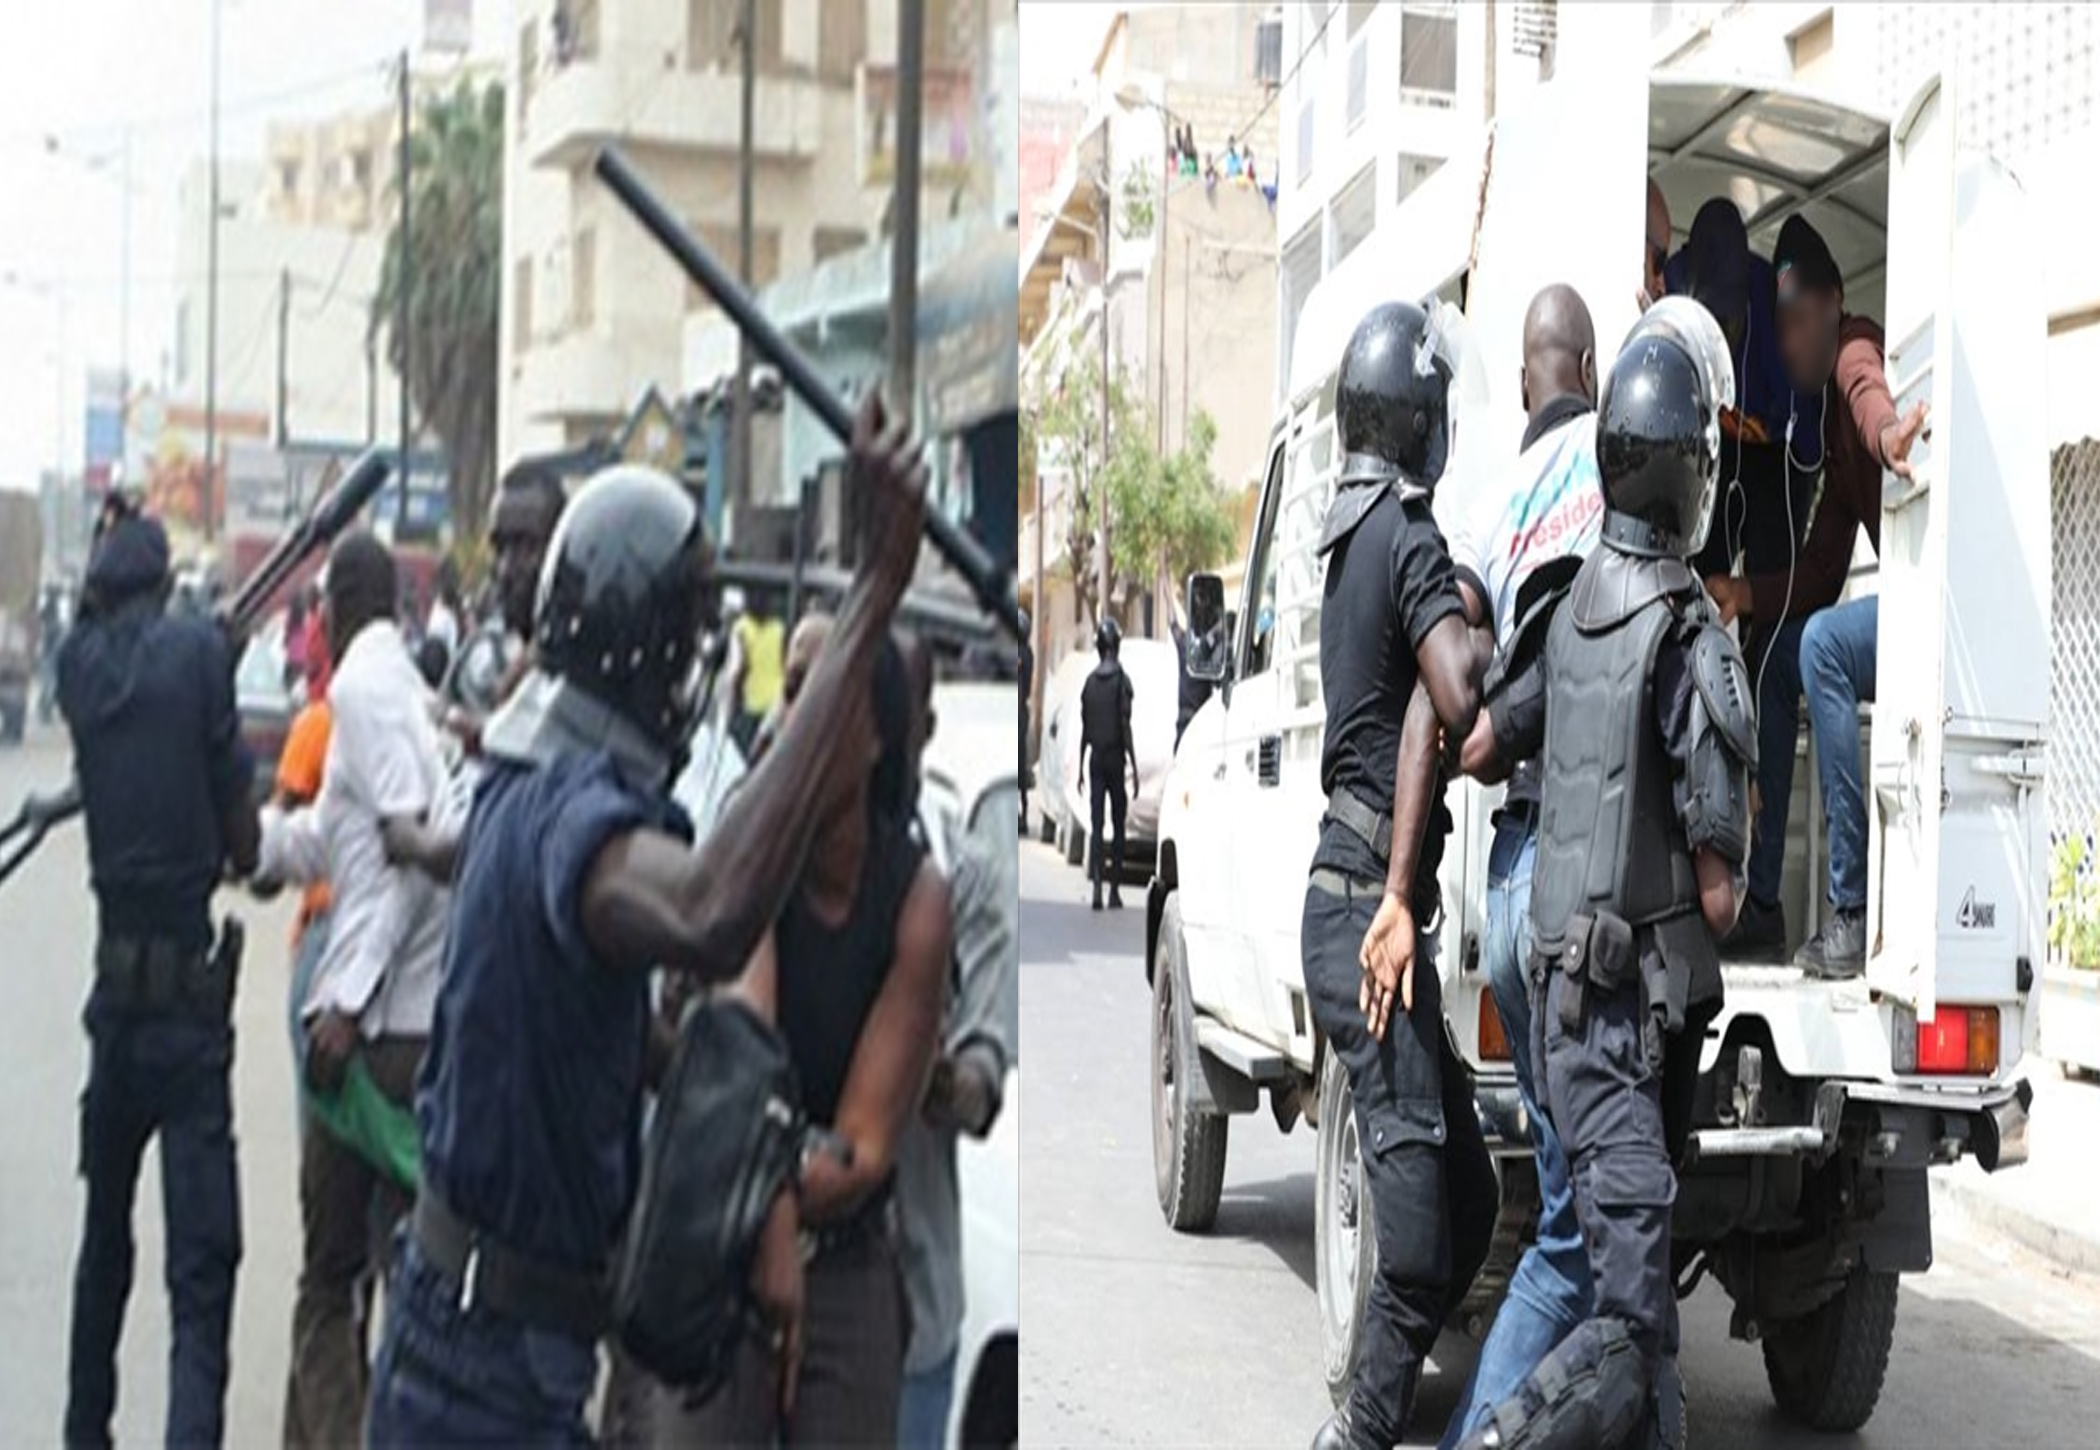 Sénégal : plus de 300 personnes arrêtées lors des émeutes (Média)